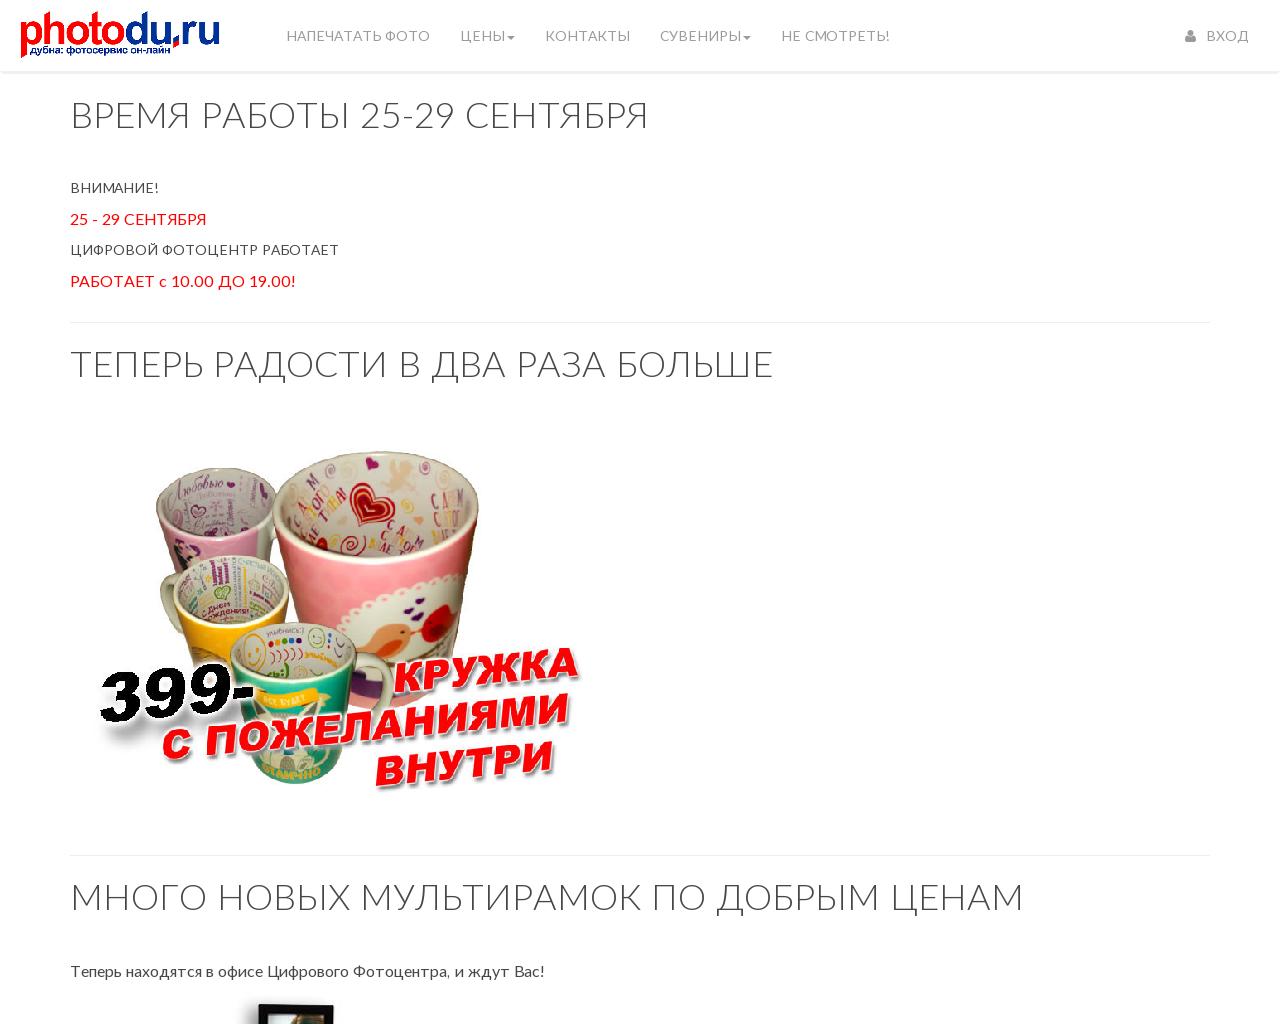 Изображение сайта photodu.ru в разрешении 1280x1024